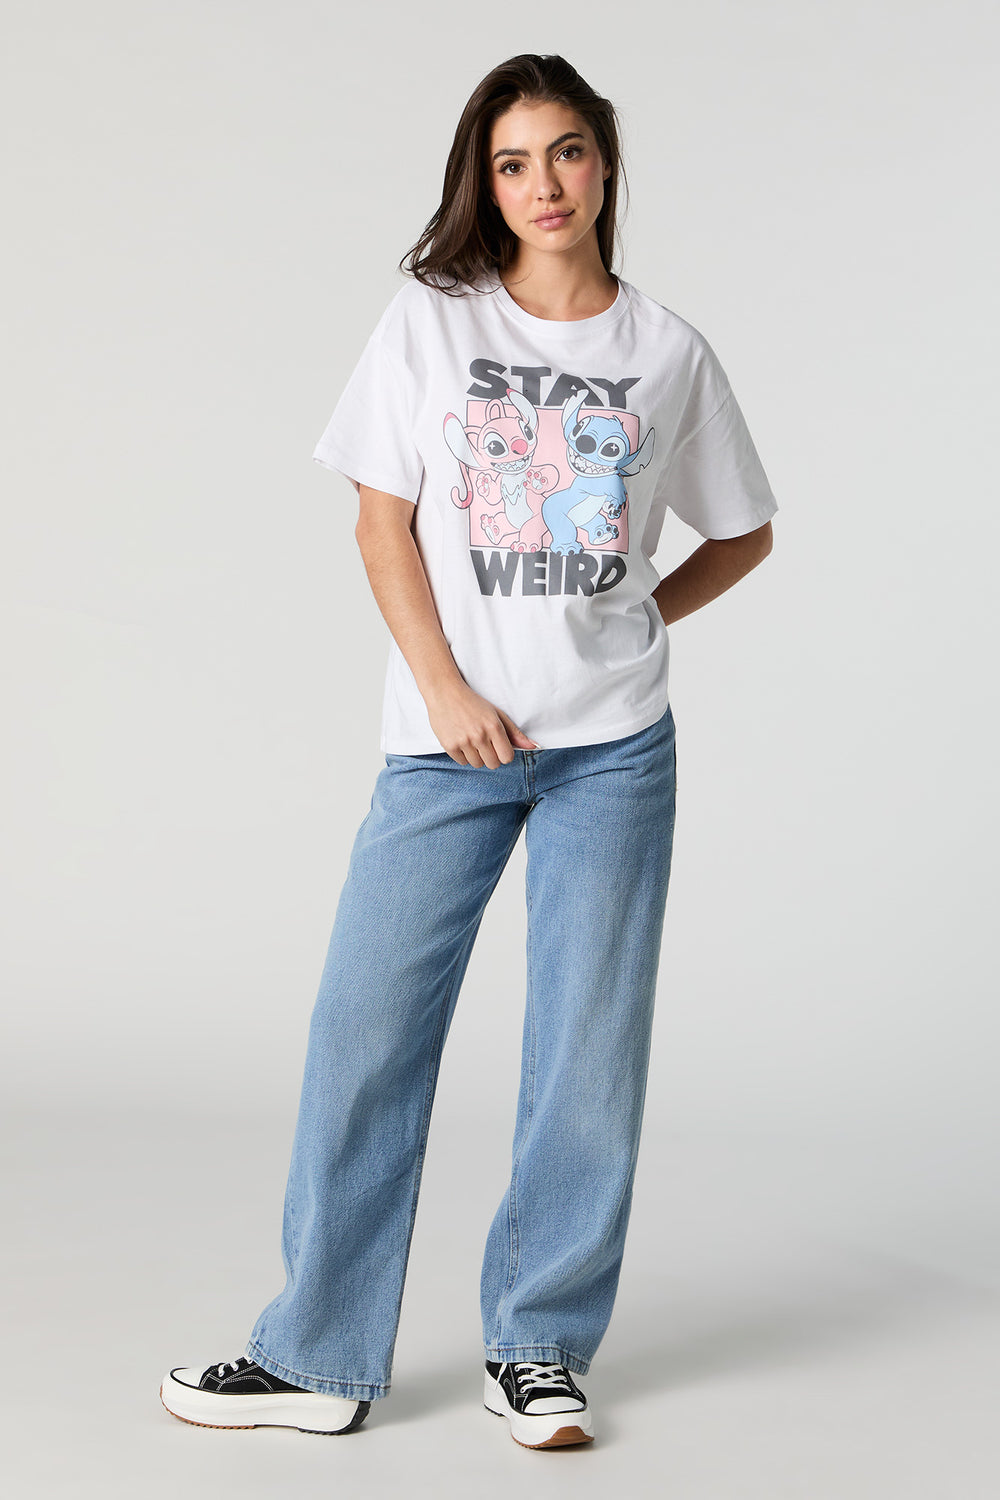 Stay Weird Stitch Graphic Boyfriend T-Shirt Stay Weird Stitch Graphic Boyfriend T-Shirt 3